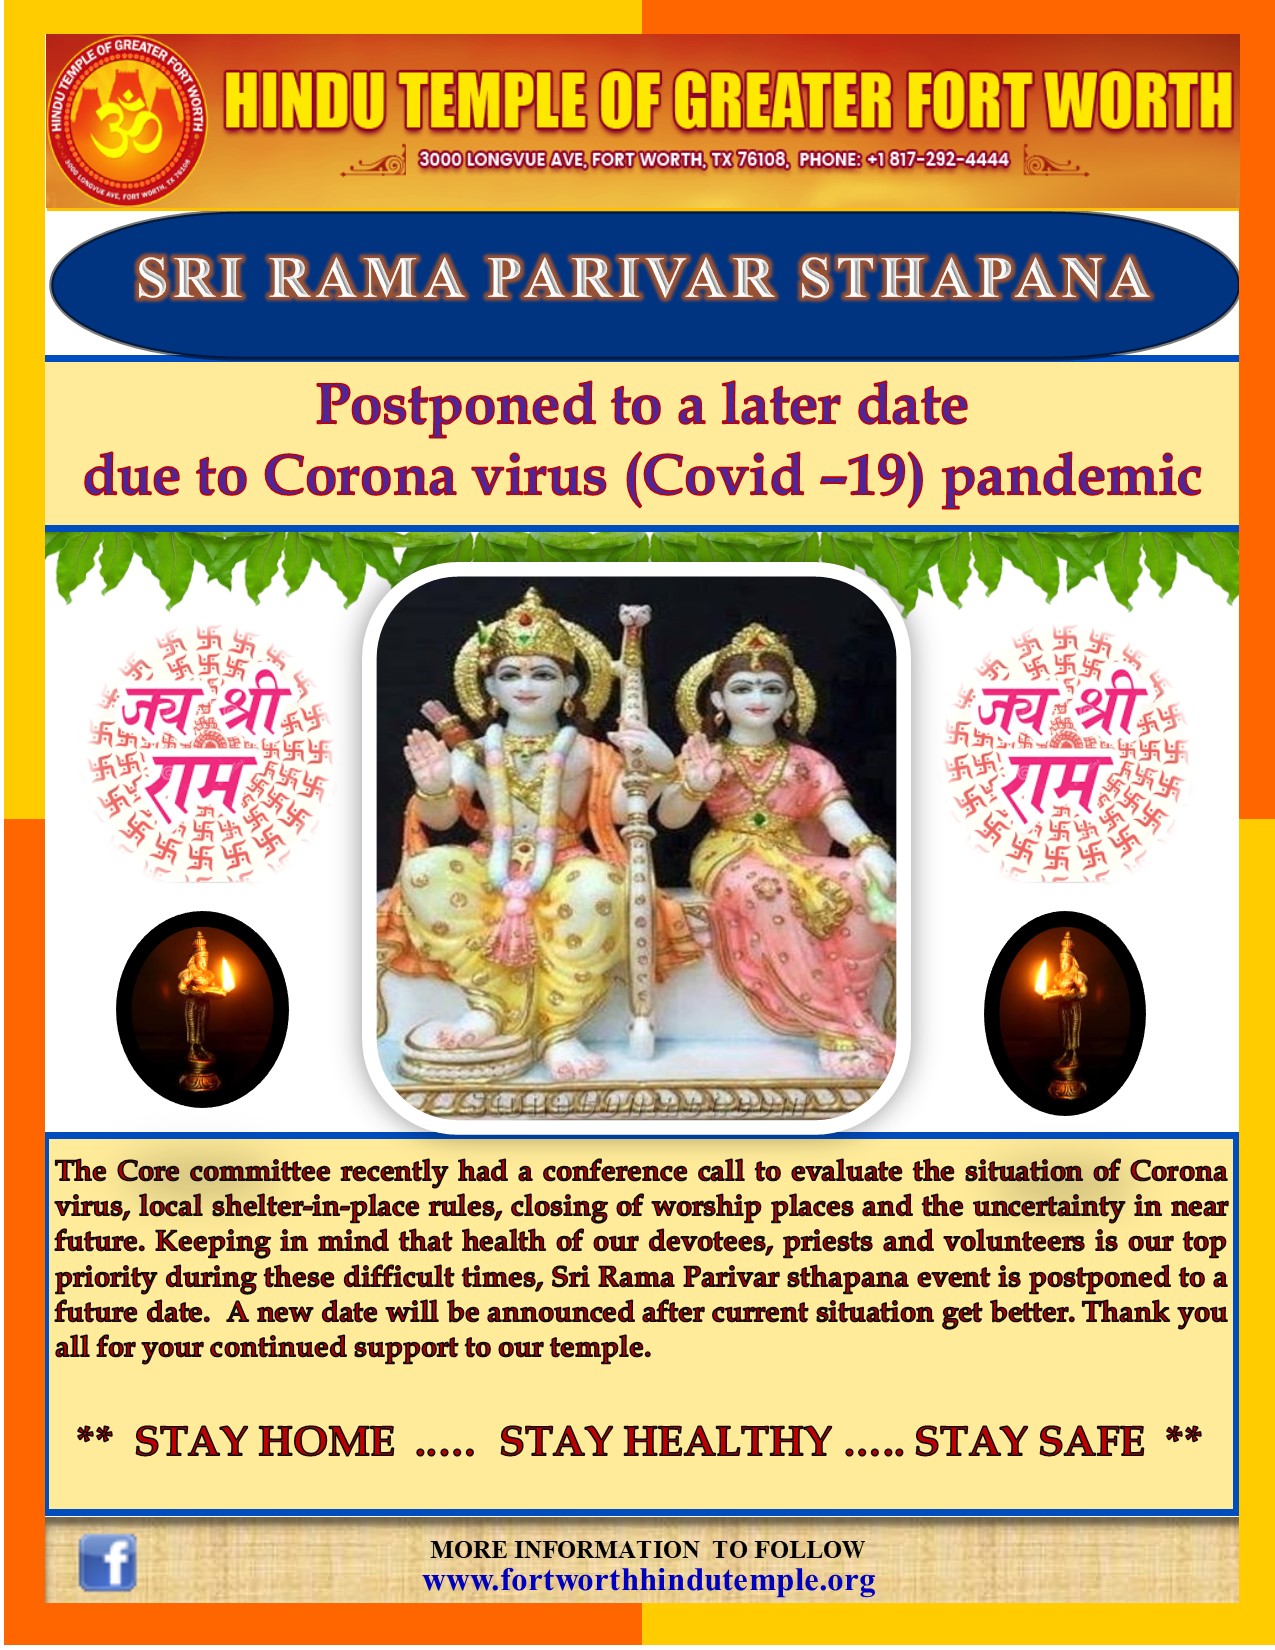 Sri Rama Parivar Sthapana postponed